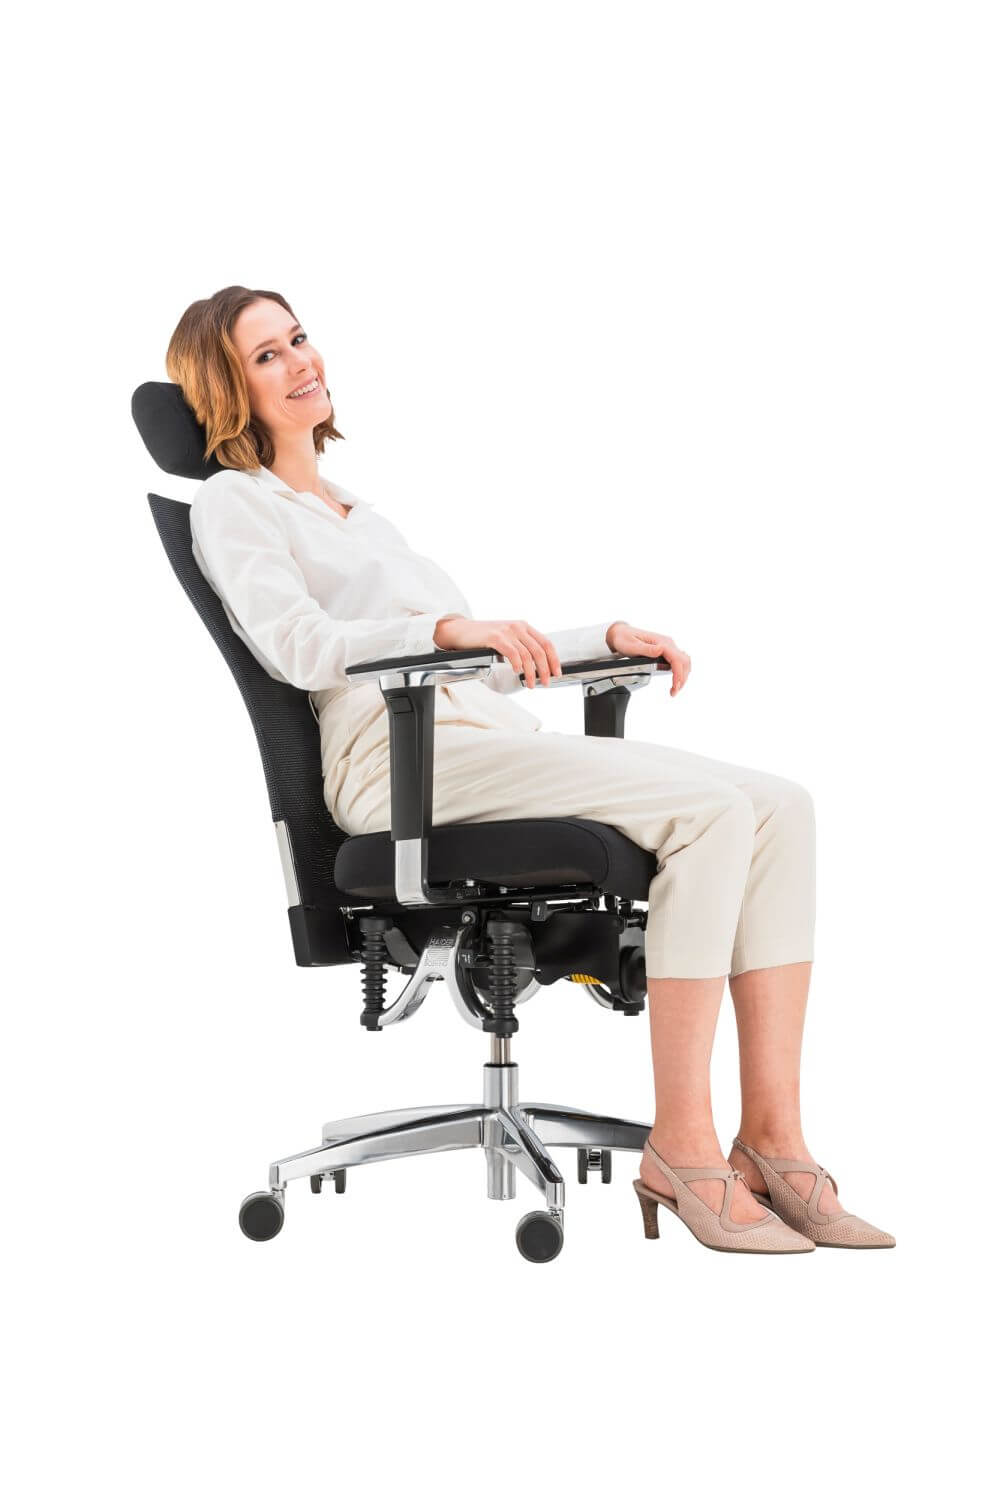 Haider Bioswing Bürostuhl 660 iQ Bestseller mit sitzender Frau im Einsatz